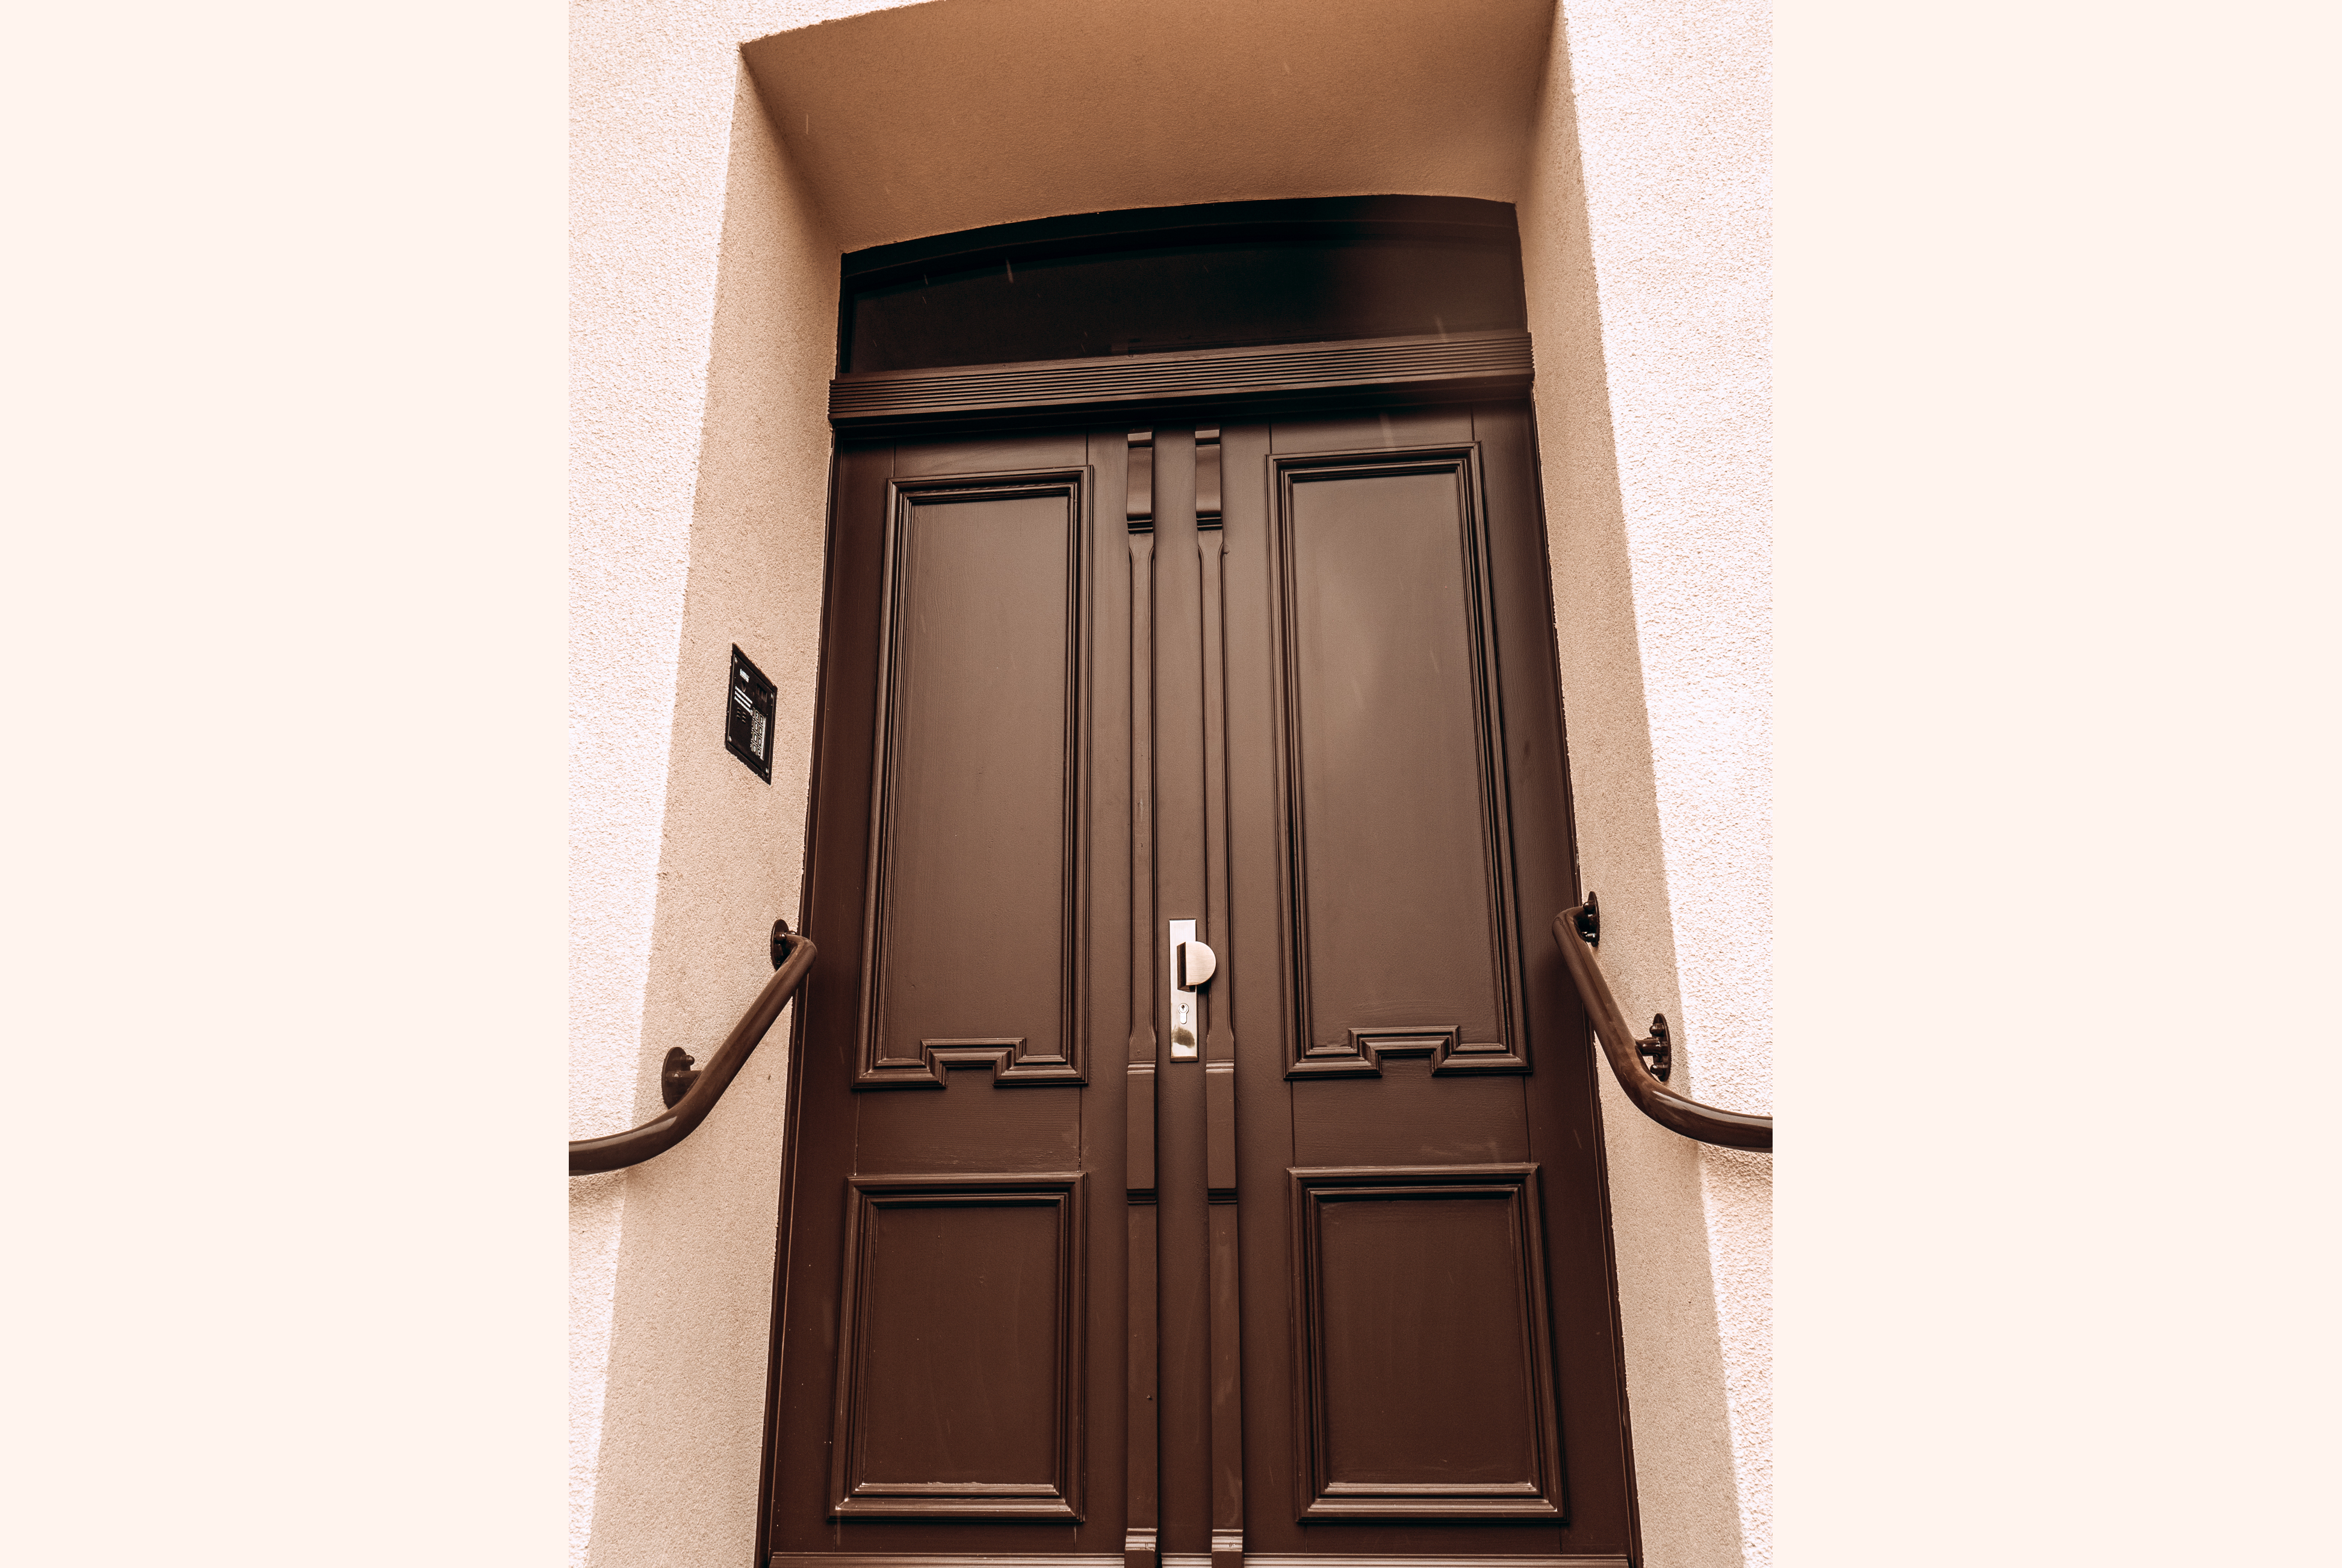 Widok elementu wymienionej stolarki drzwiowej głównego wejścia z zachowanym historycznym charakterem detali.